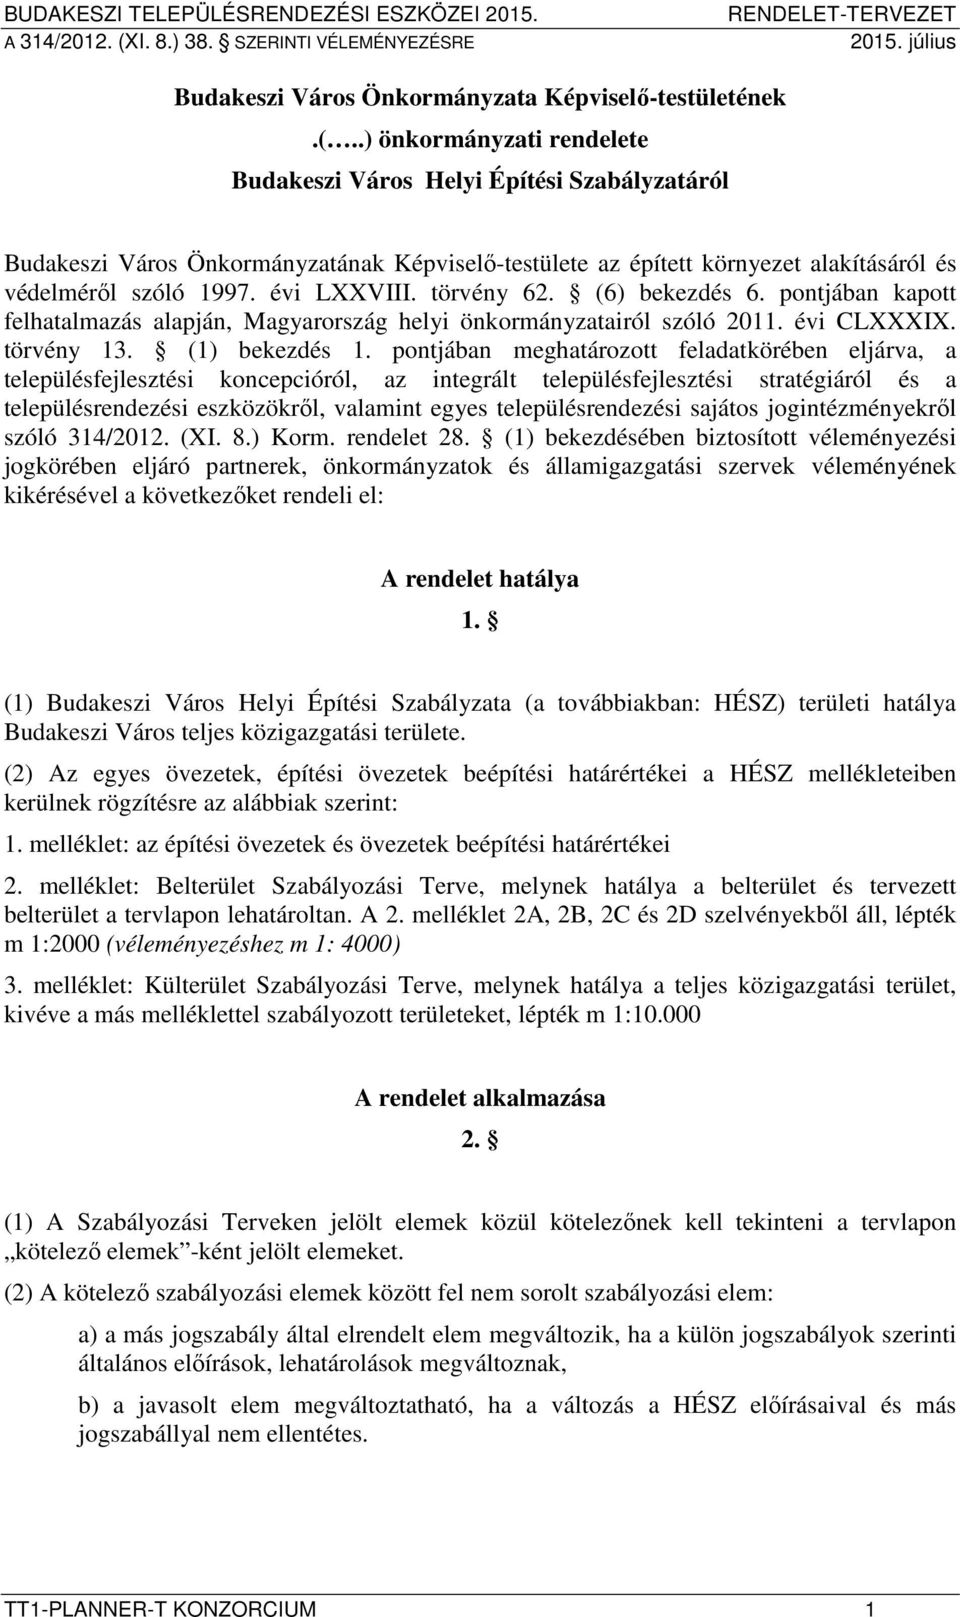 törvény 62. (6) bekezdés 6. pontjában kapott felhatalmazás alapján, Magyarország helyi önkormányzatairól szóló 2011. évi CLXXXIX. törvény 13. (1) bekezdés 1.